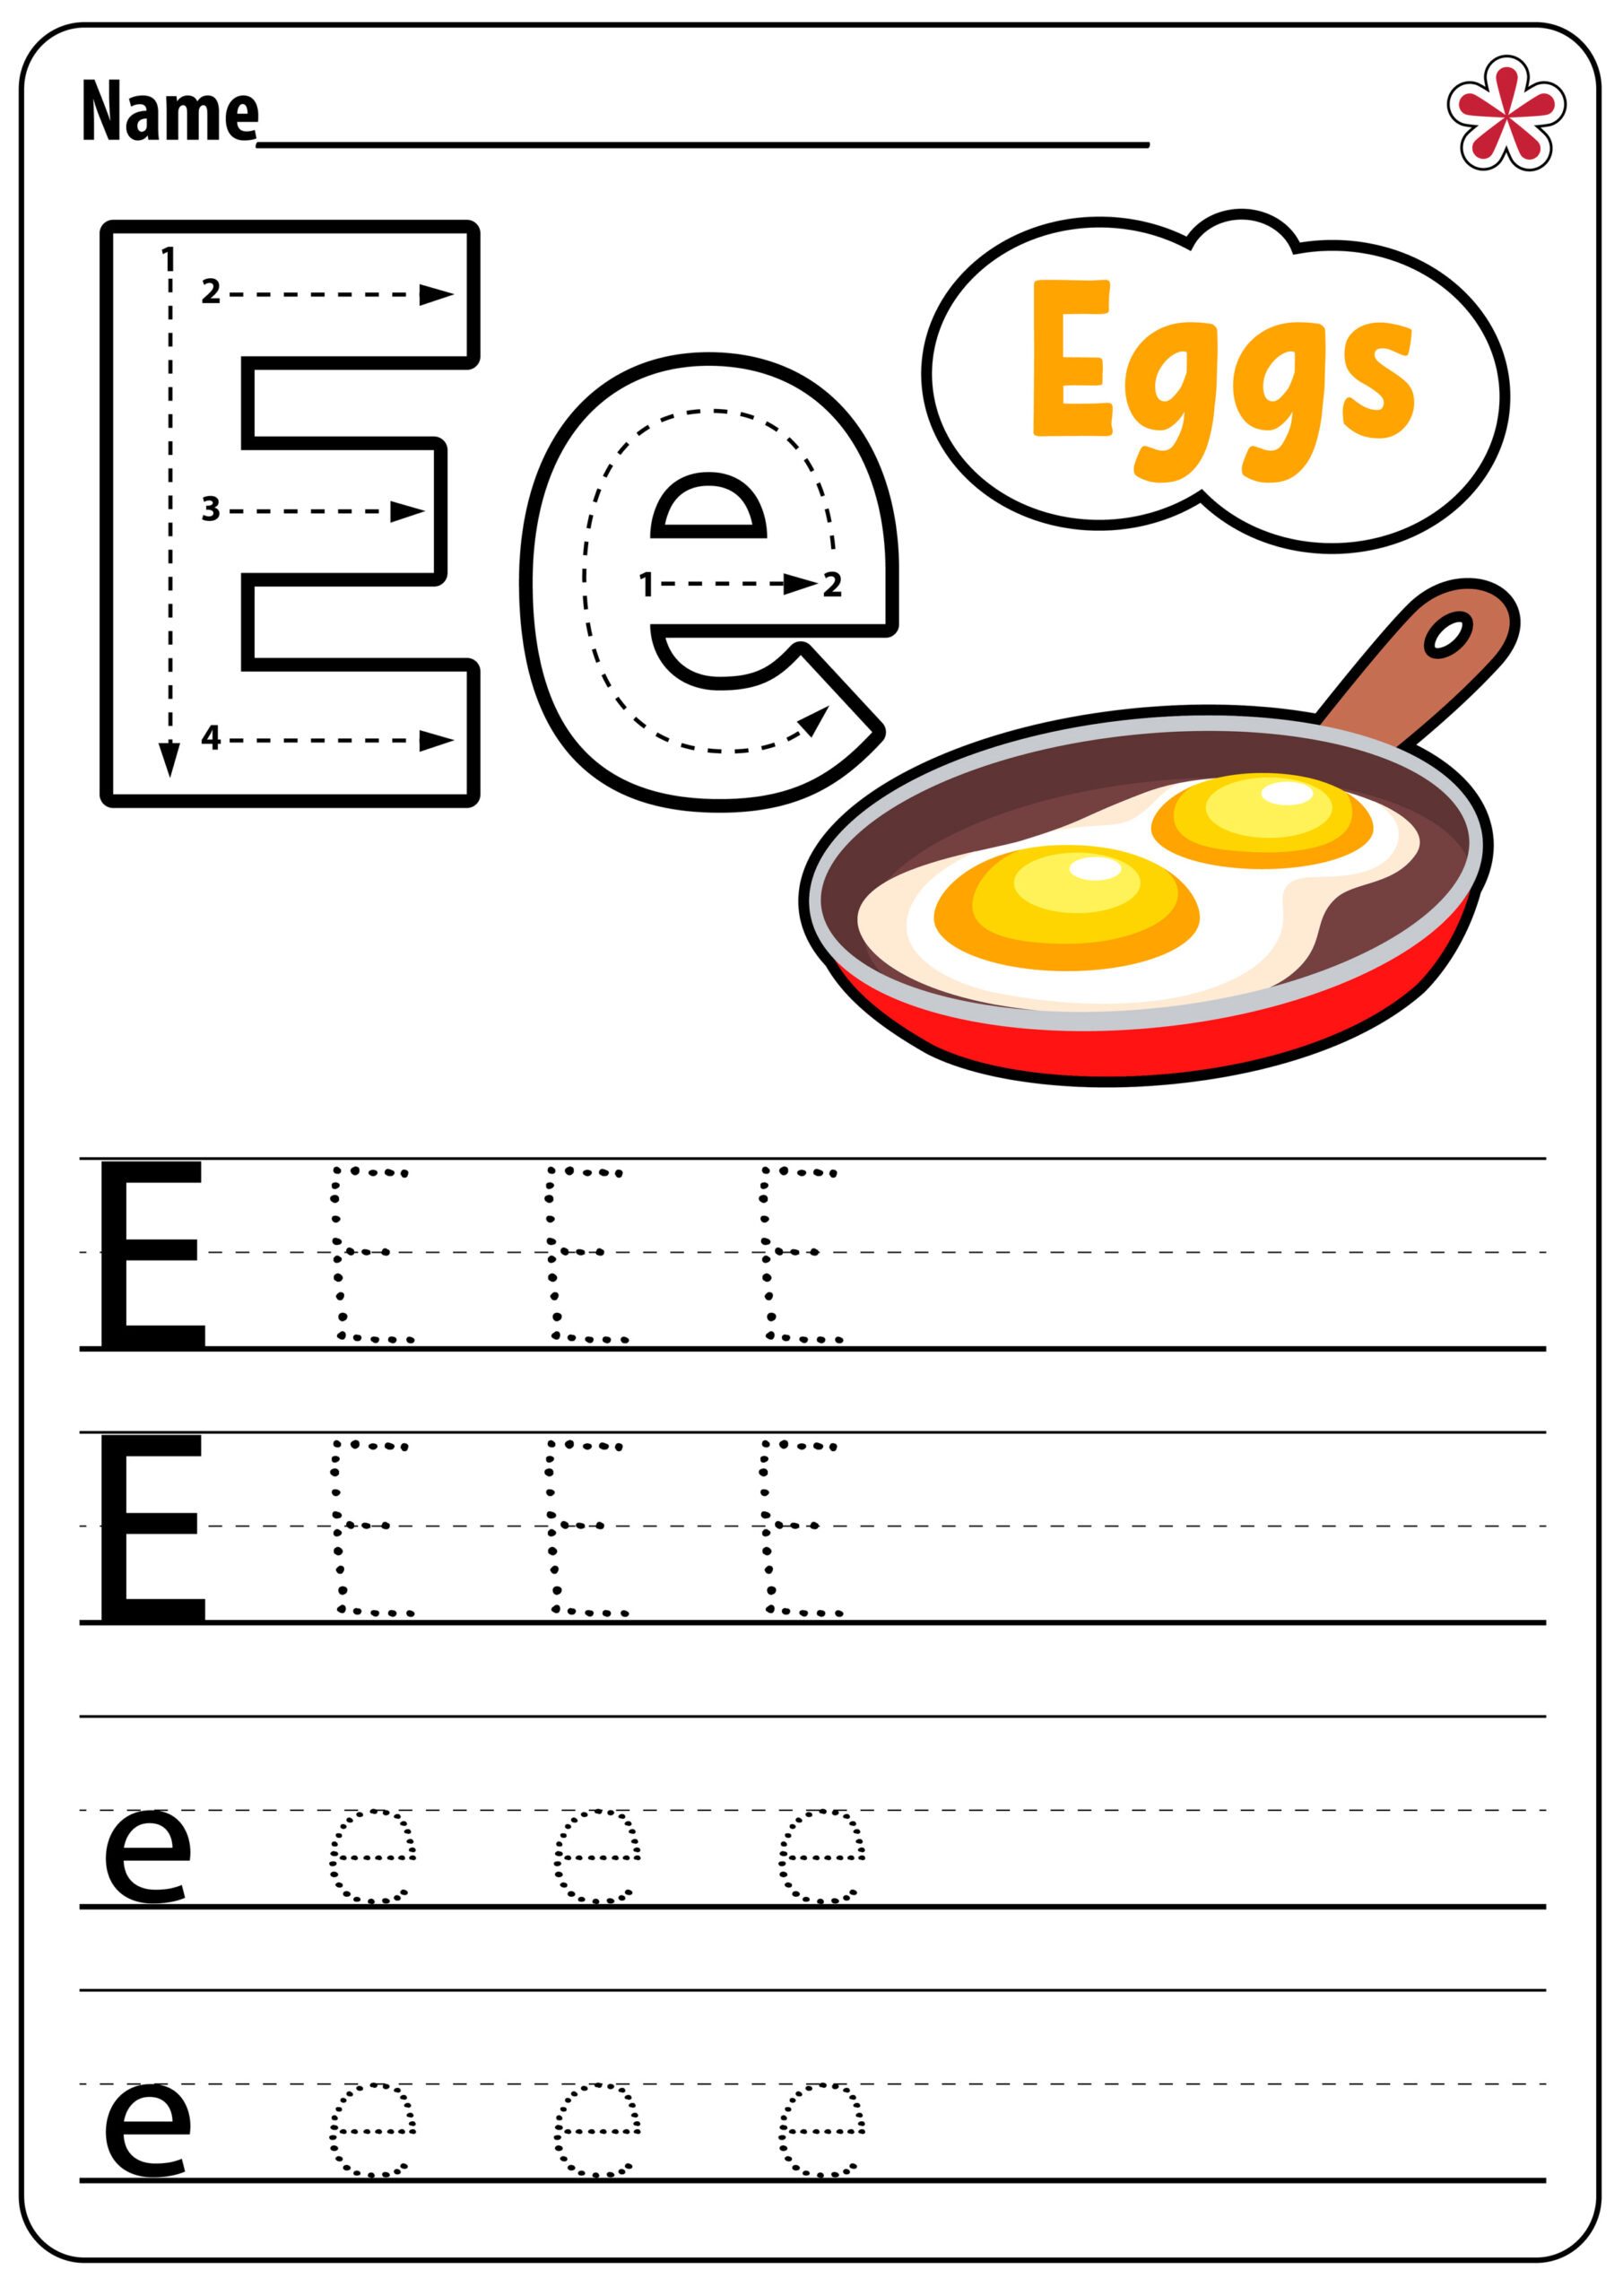 Letter E Worksheets For Kindergarten And Preschool regarding Letter E Worksheets For Kindergarten